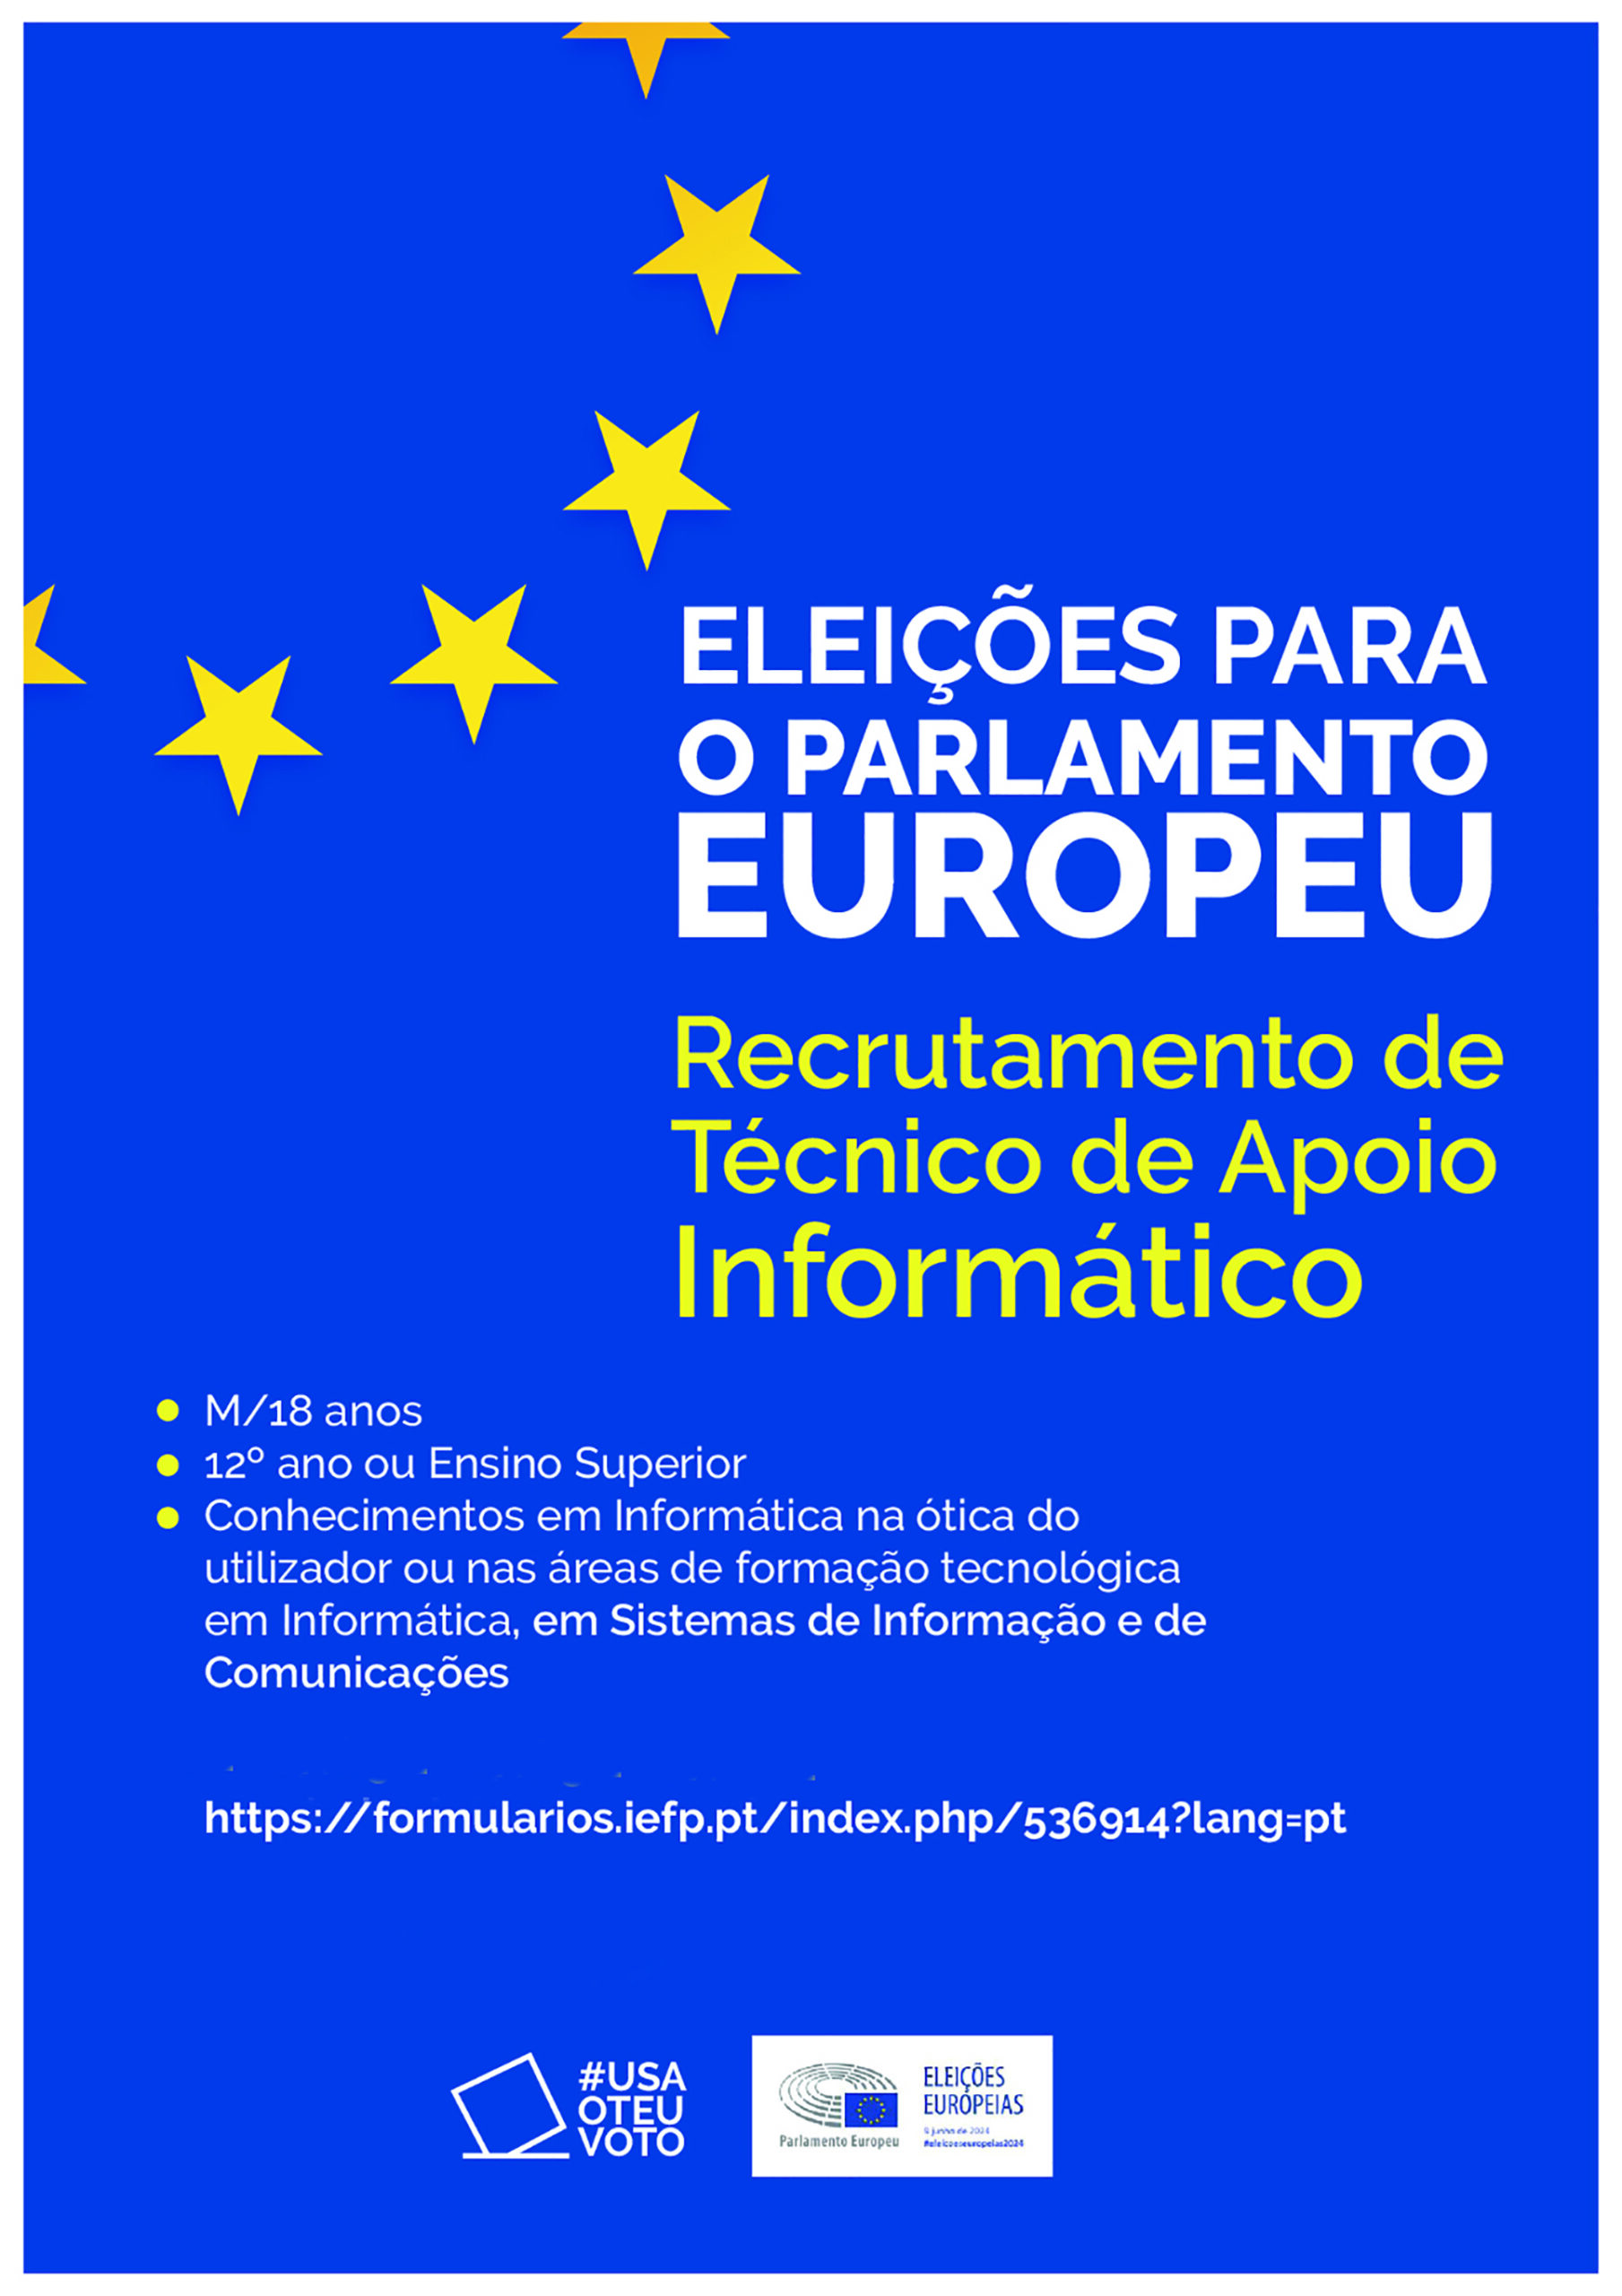 Recrutamento de Técnicos de Apoio Informático para as eleições europeias